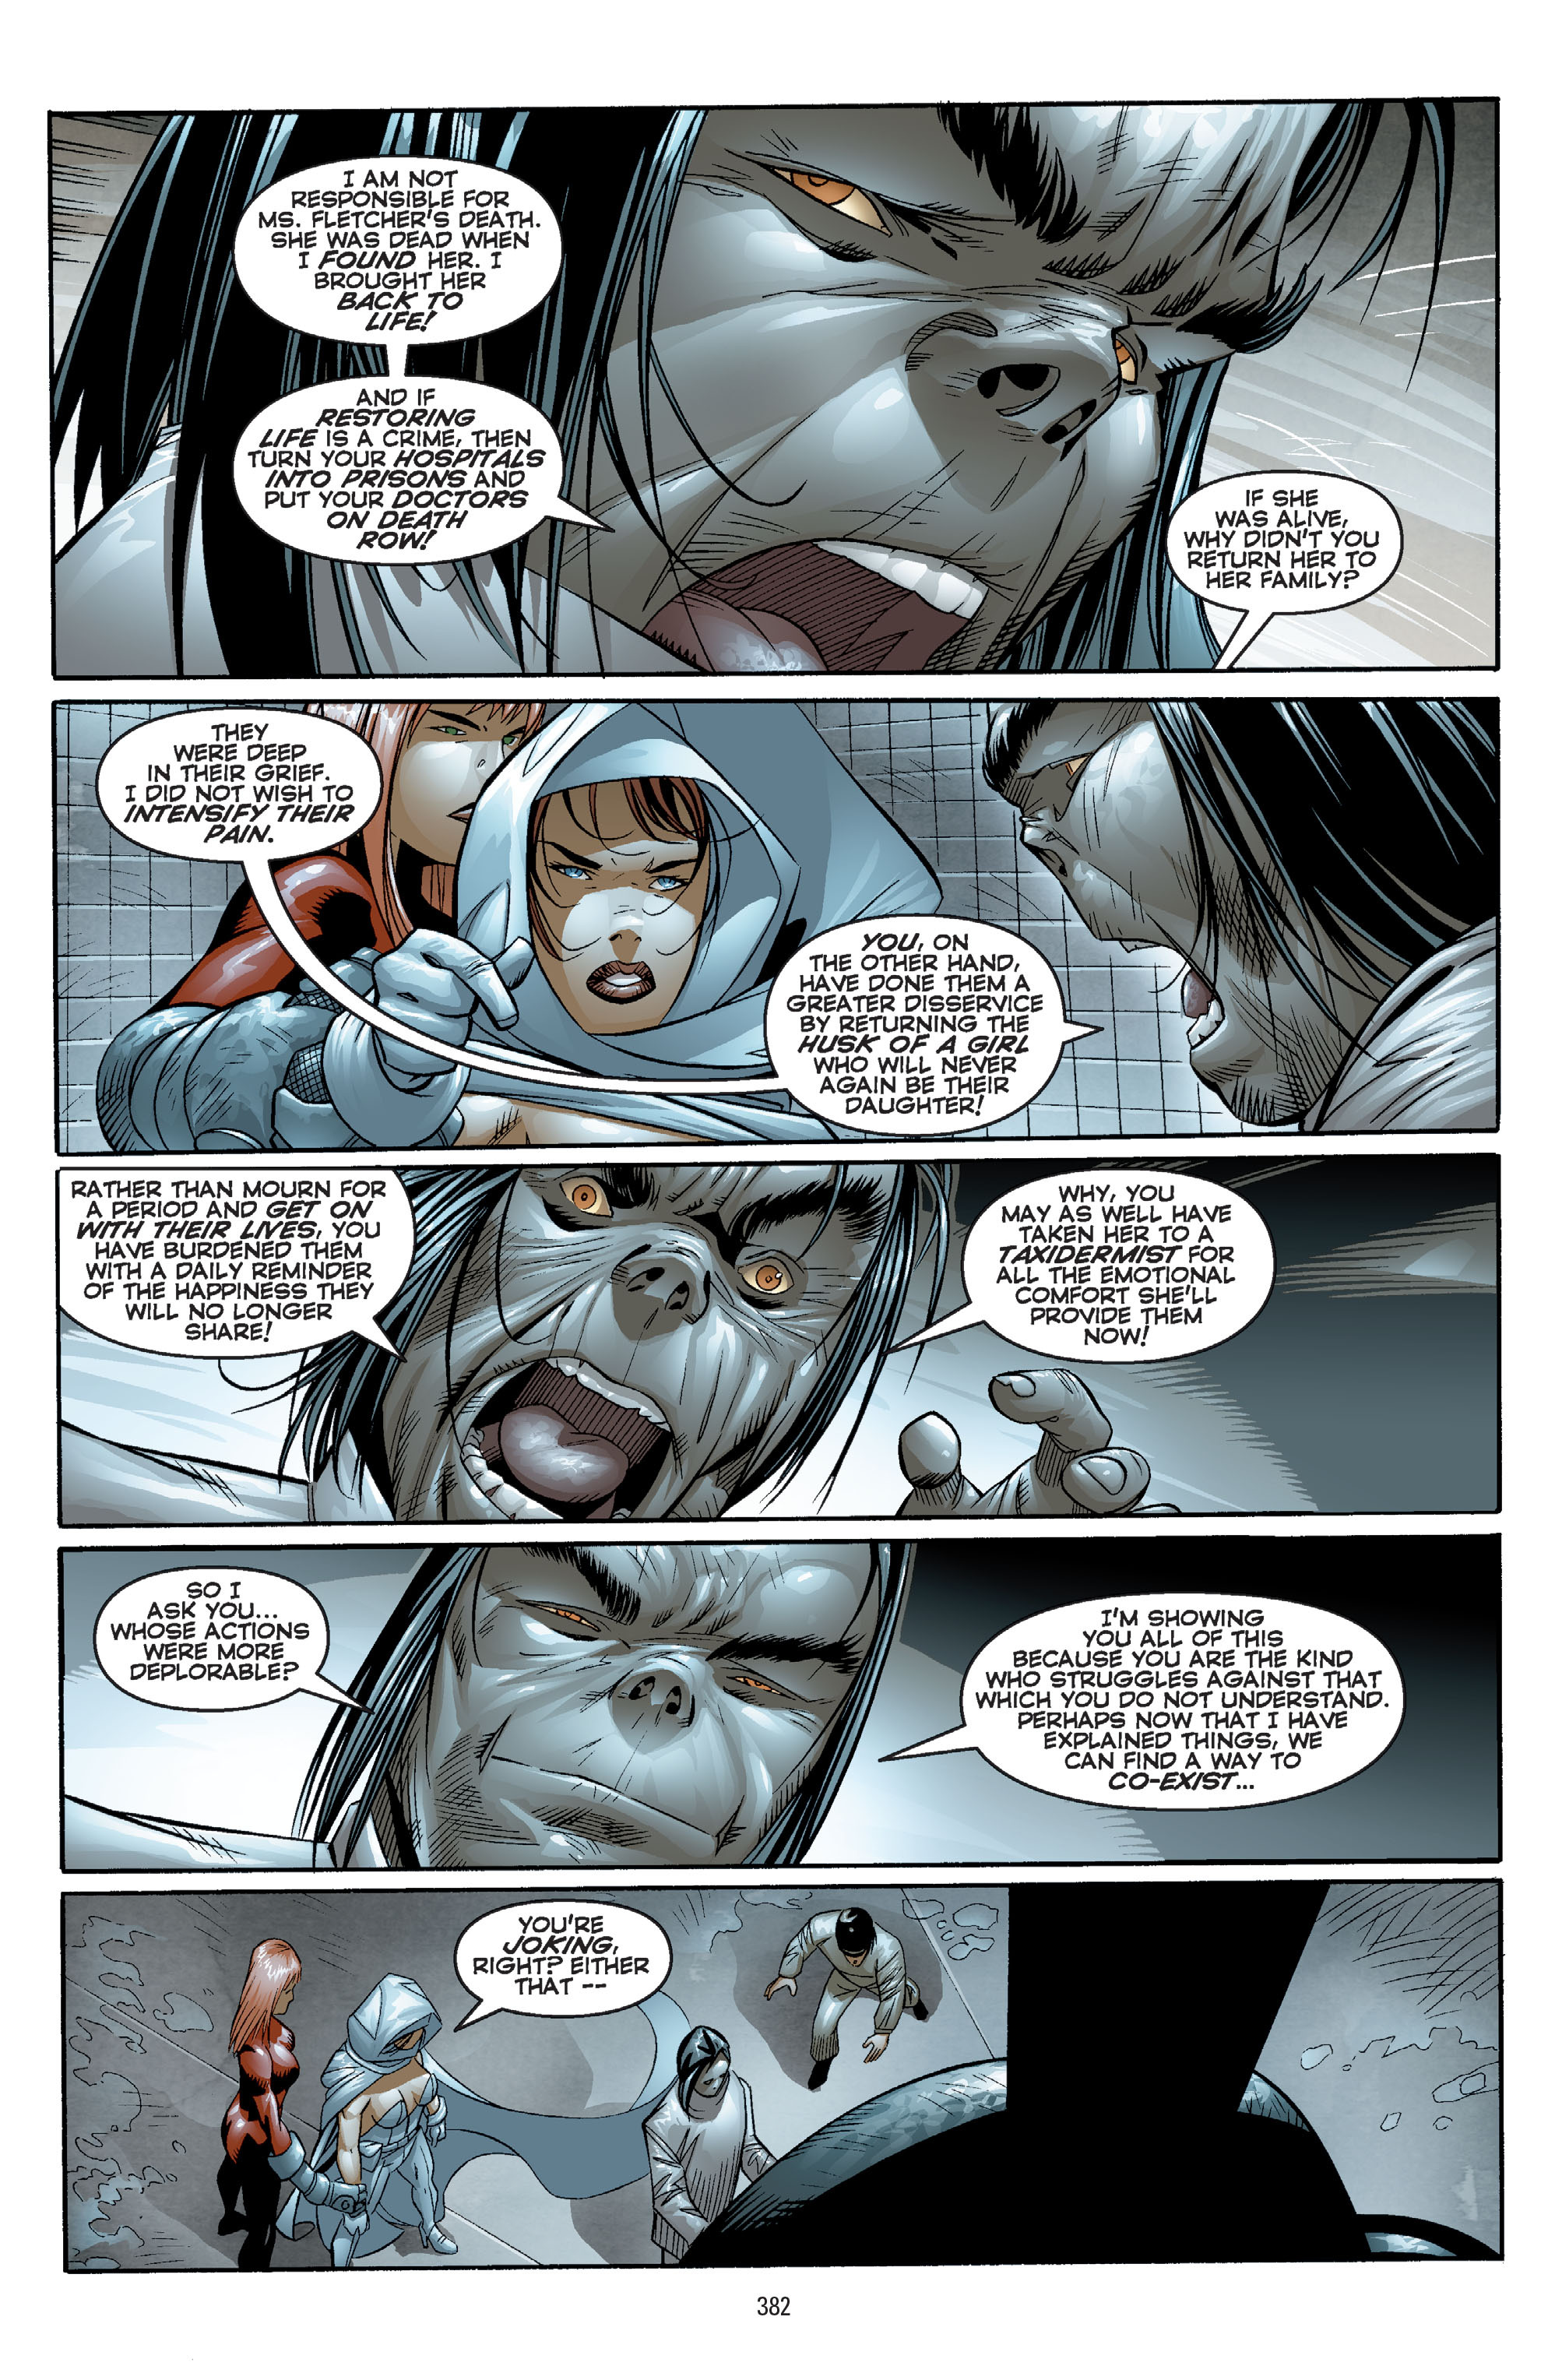 DC Comics/Dark Horse Comics: Justice League Full #1 - English 372